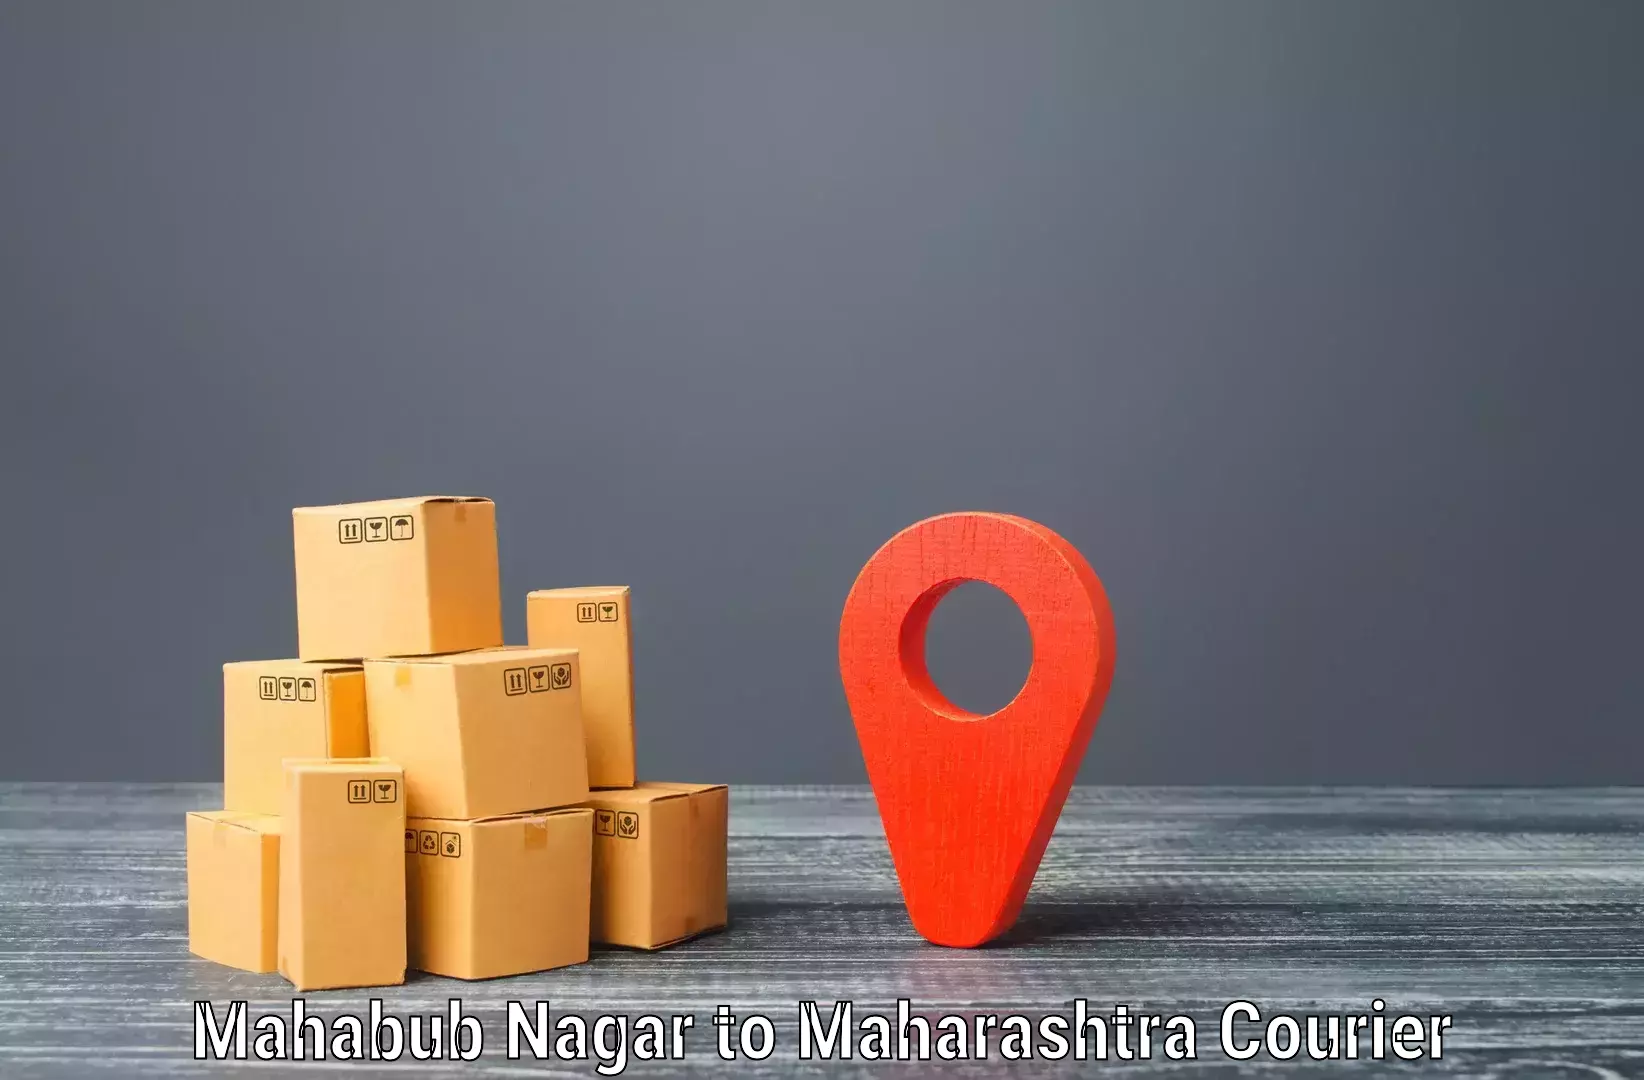 Package tracking Mahabub Nagar to Pimpri Chinchwad